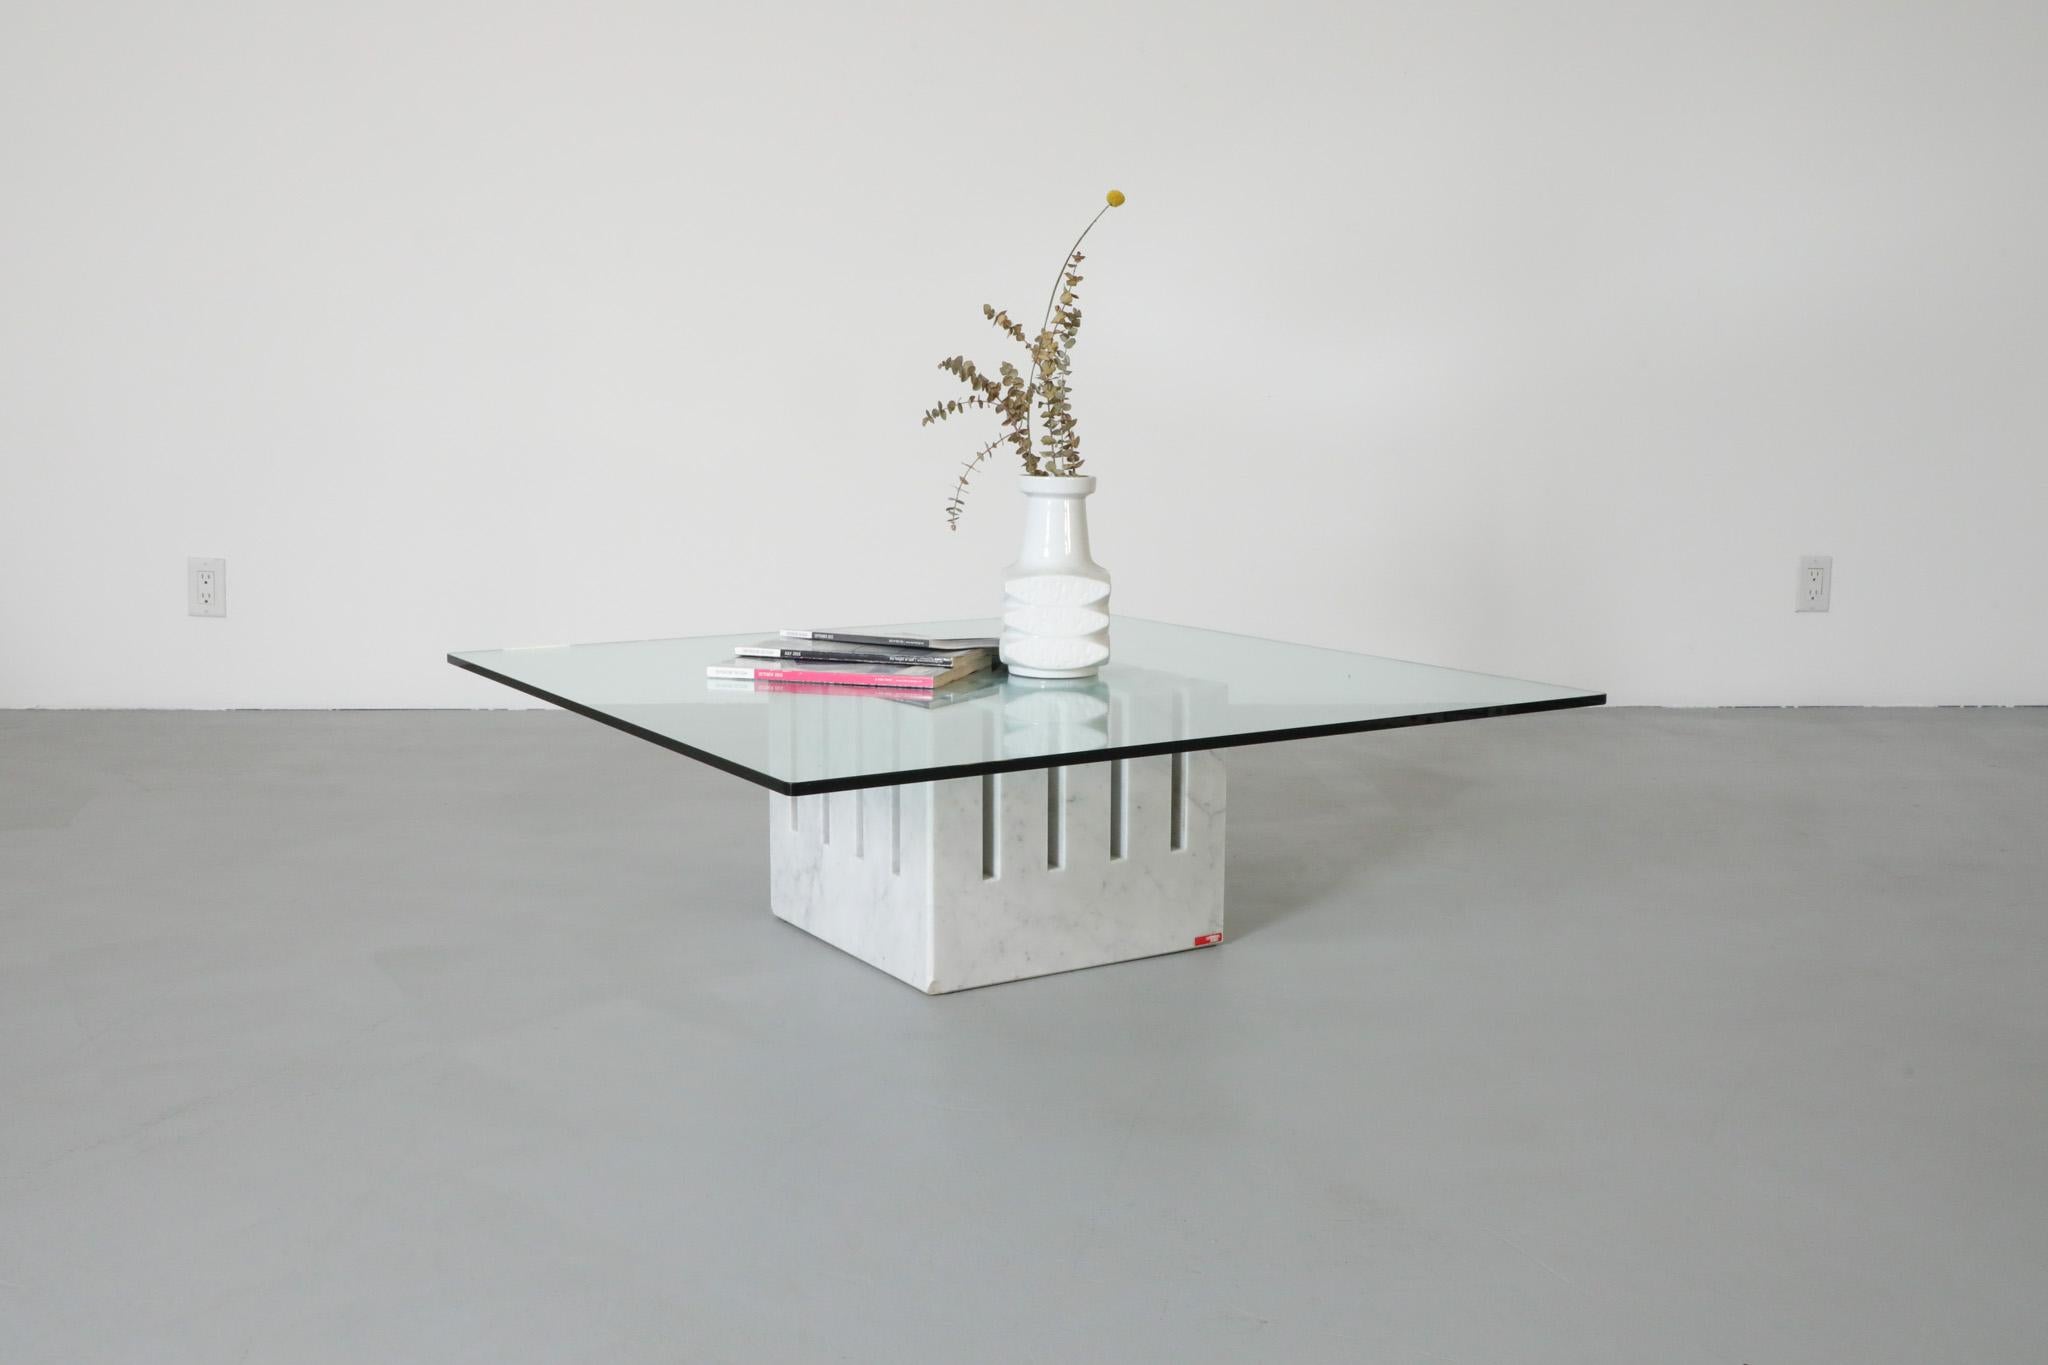 1986 Table basse 'Scacco' de Philip Jackson pour Cattelan Italia. Cette table carrée possède une base en marbre sculptée de manière architecturale avec un plateau en verre transparent, donnant de la visibilité au design de la base en marbre. En état